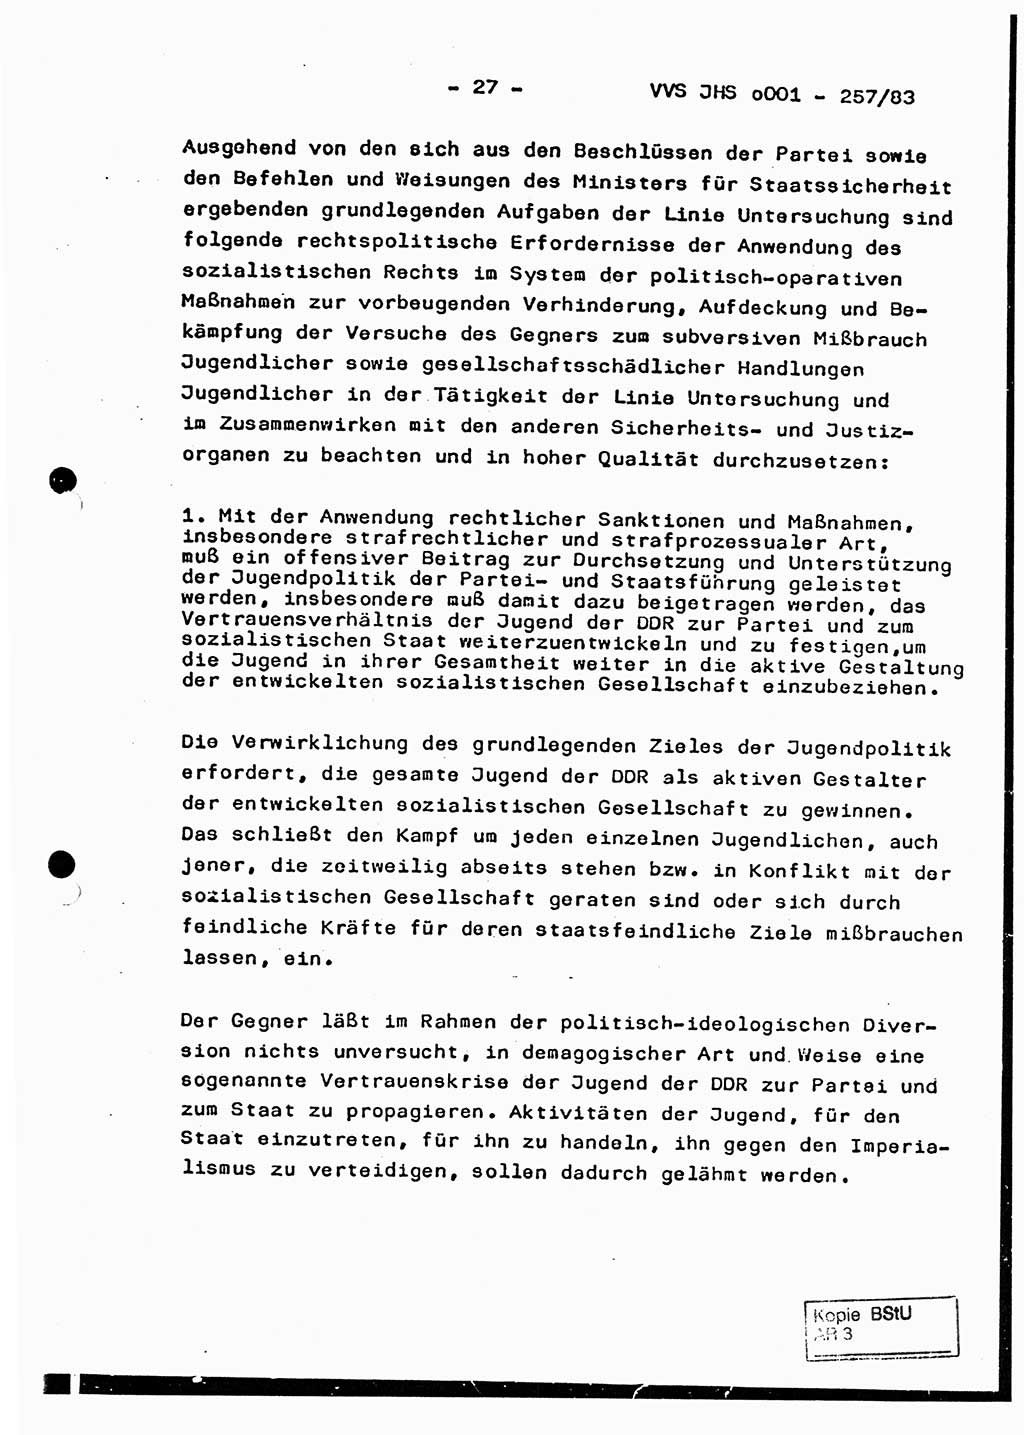 Dissertation, Oberst Helmut Lubas (BV Mdg.), Oberstleutnant Manfred Eschberger (HA IX), Oberleutnant Hans-Jürgen Ludwig (JHS), Ministerium für Staatssicherheit (MfS) [Deutsche Demokratische Republik (DDR)], Juristische Hochschule (JHS), Vertrauliche Verschlußsache (VVS) o001-257/83, Potsdam 1983, Seite 27 (Diss. MfS DDR JHS VVS o001-257/83 1983, S. 27)